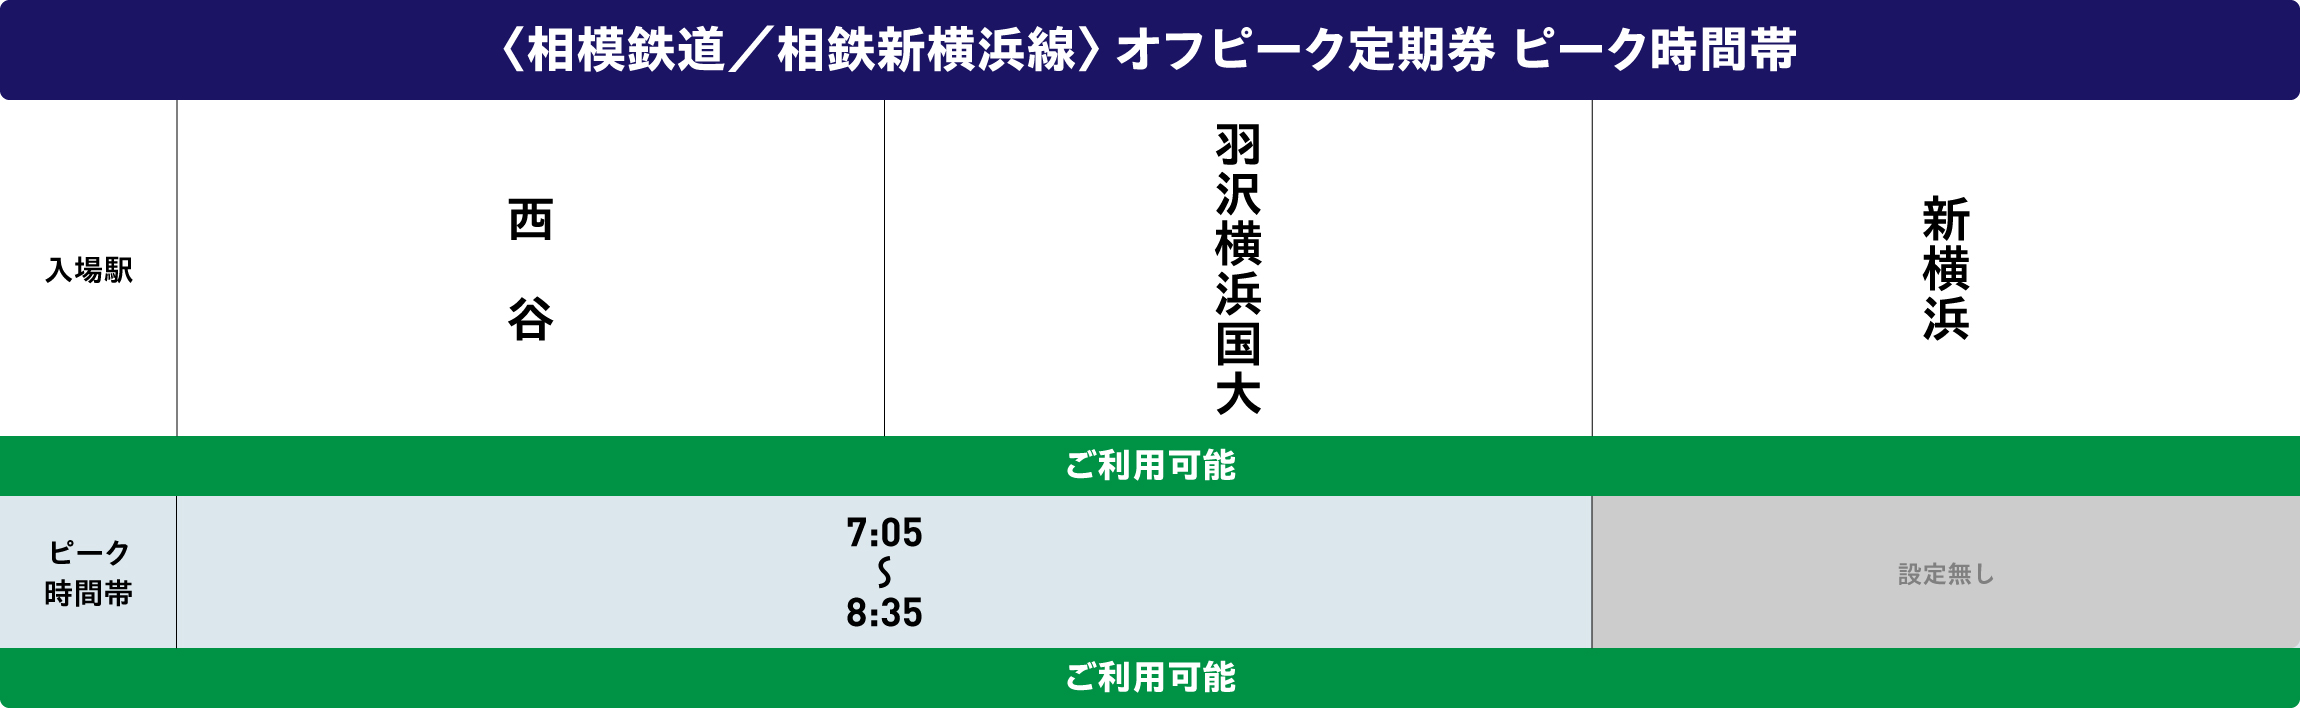 相鉄新横浜線オフピークポイントサービス対象時間帯